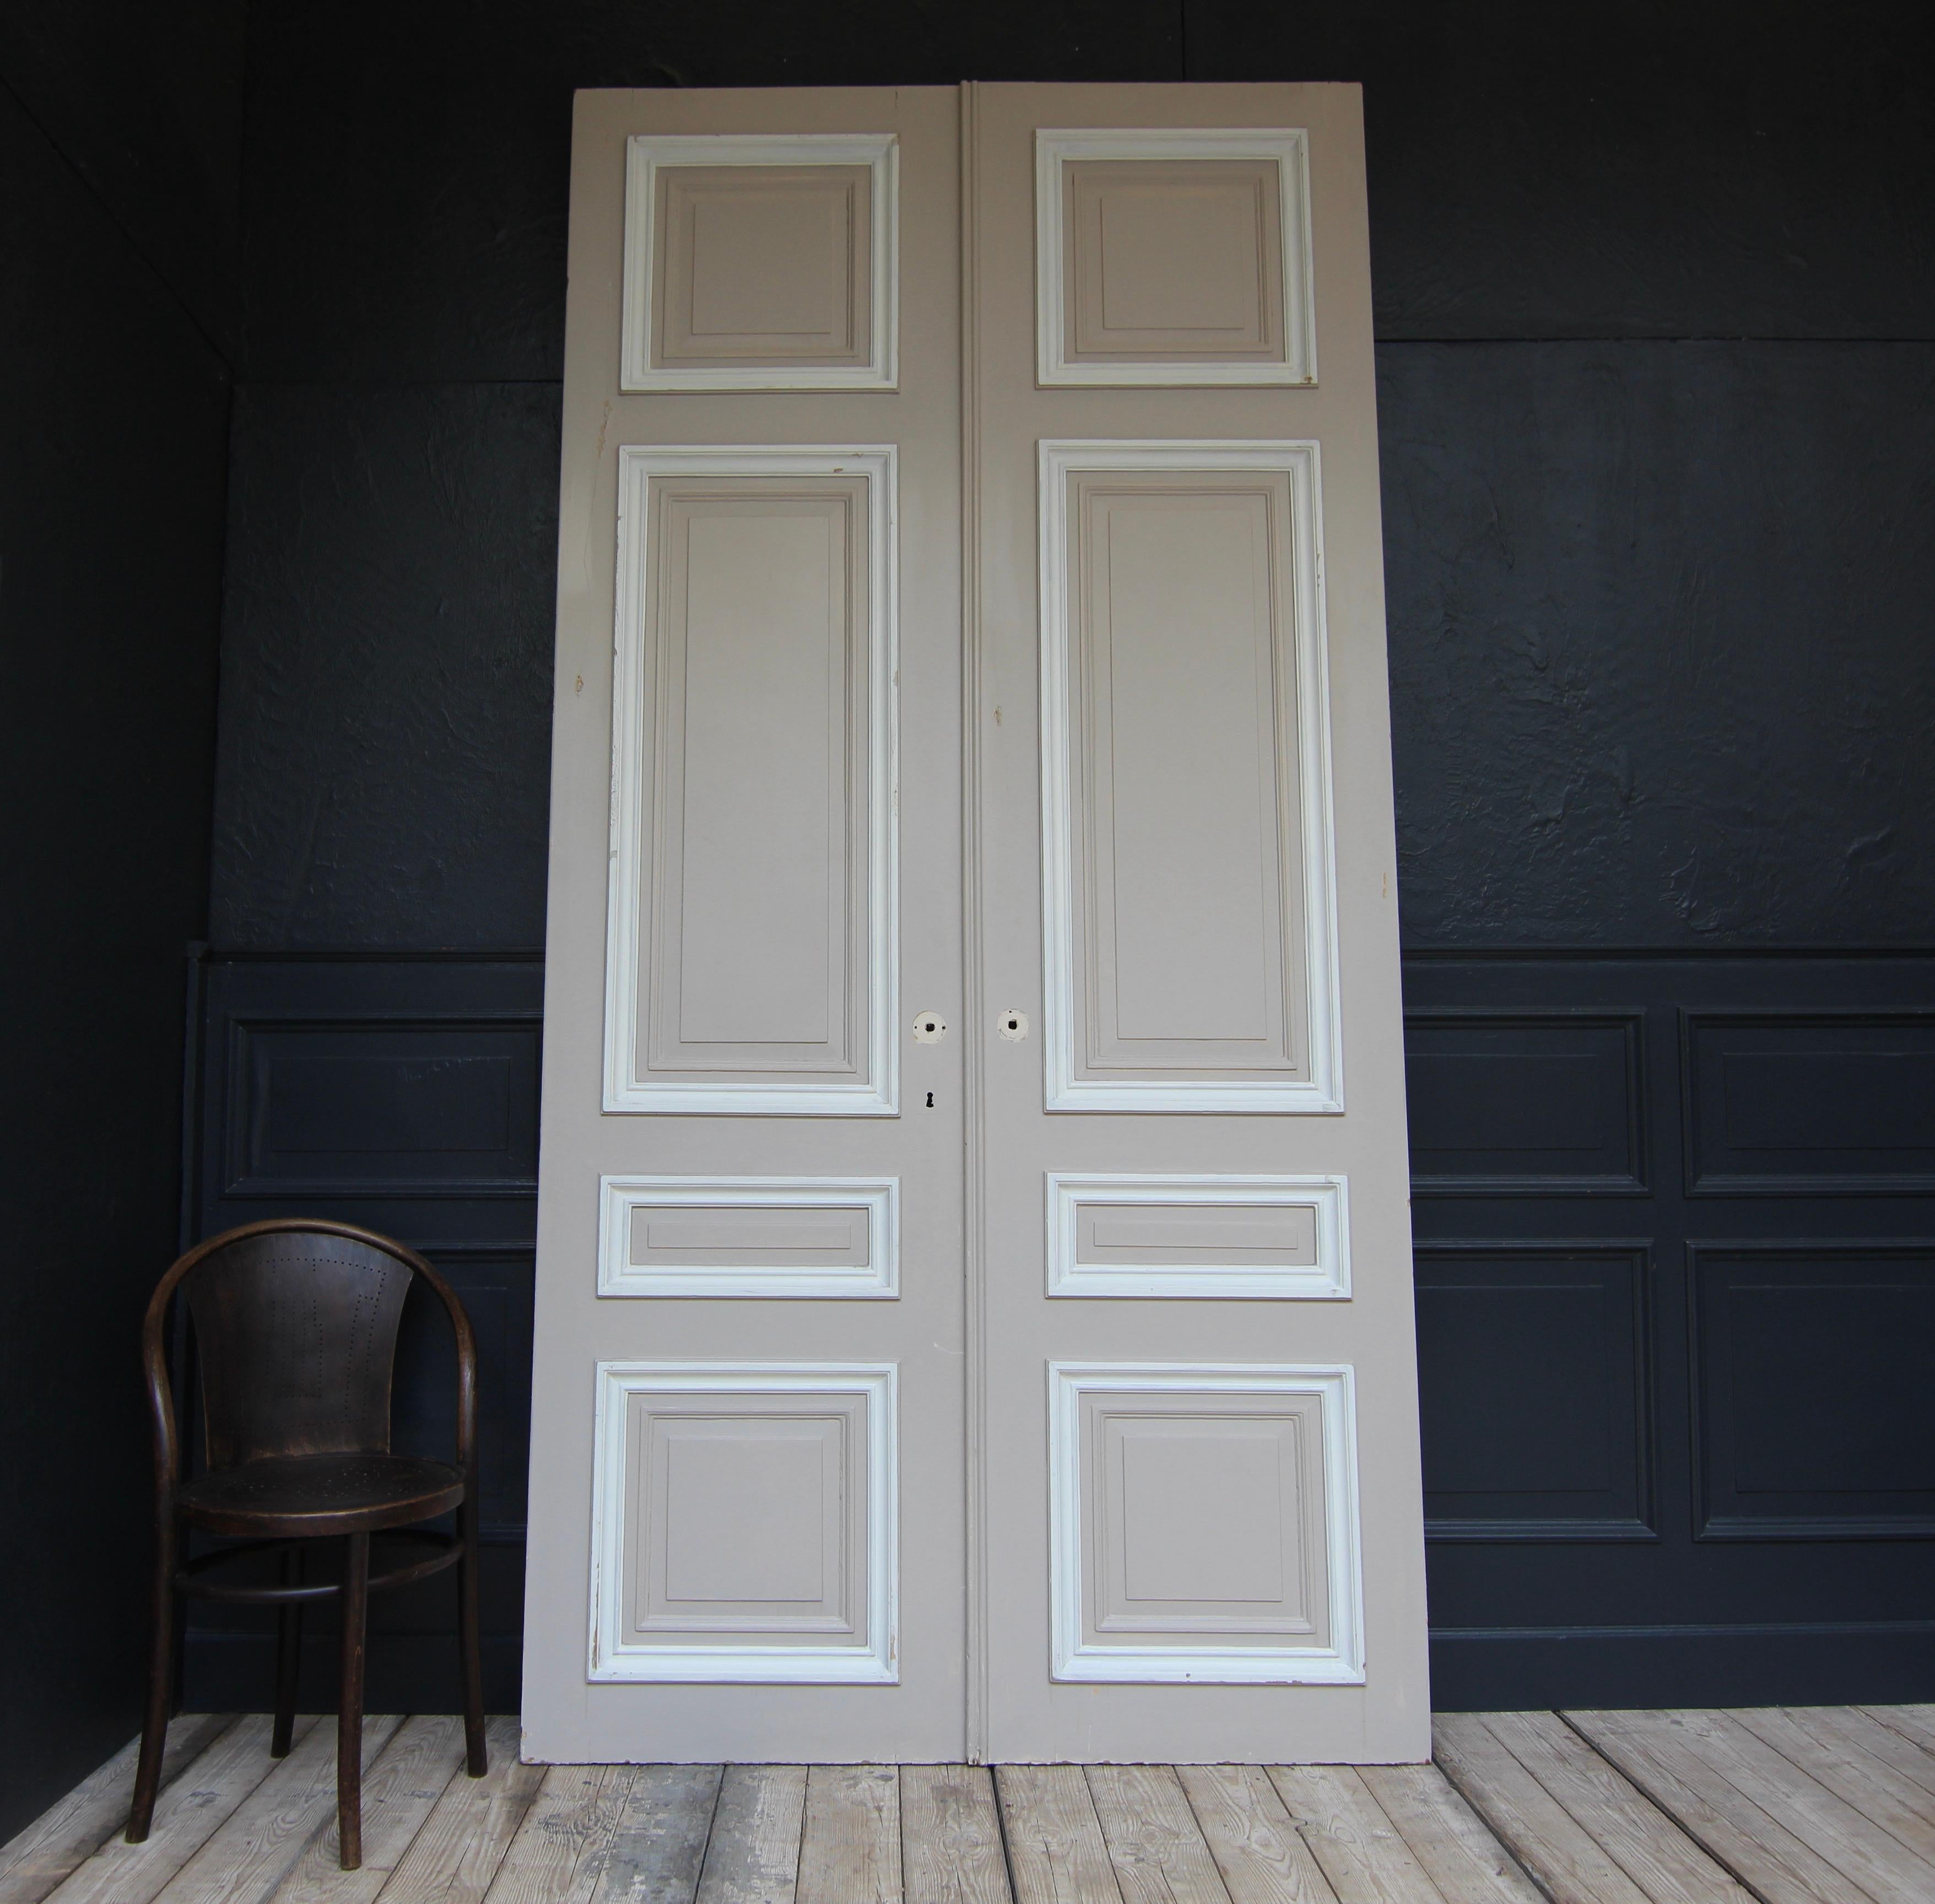 Hohe französische Doppeltür aus der 1. Hälfte des 20. Jahrhunderts. Hergestellt aus Eiche und lackiert. Unrestaurierter Zustand.

Doppeltür in Rahmenkonstruktion mit je 4 Kassettenfeldern.

Eine Seite in taupefarbener, die andere Seite in